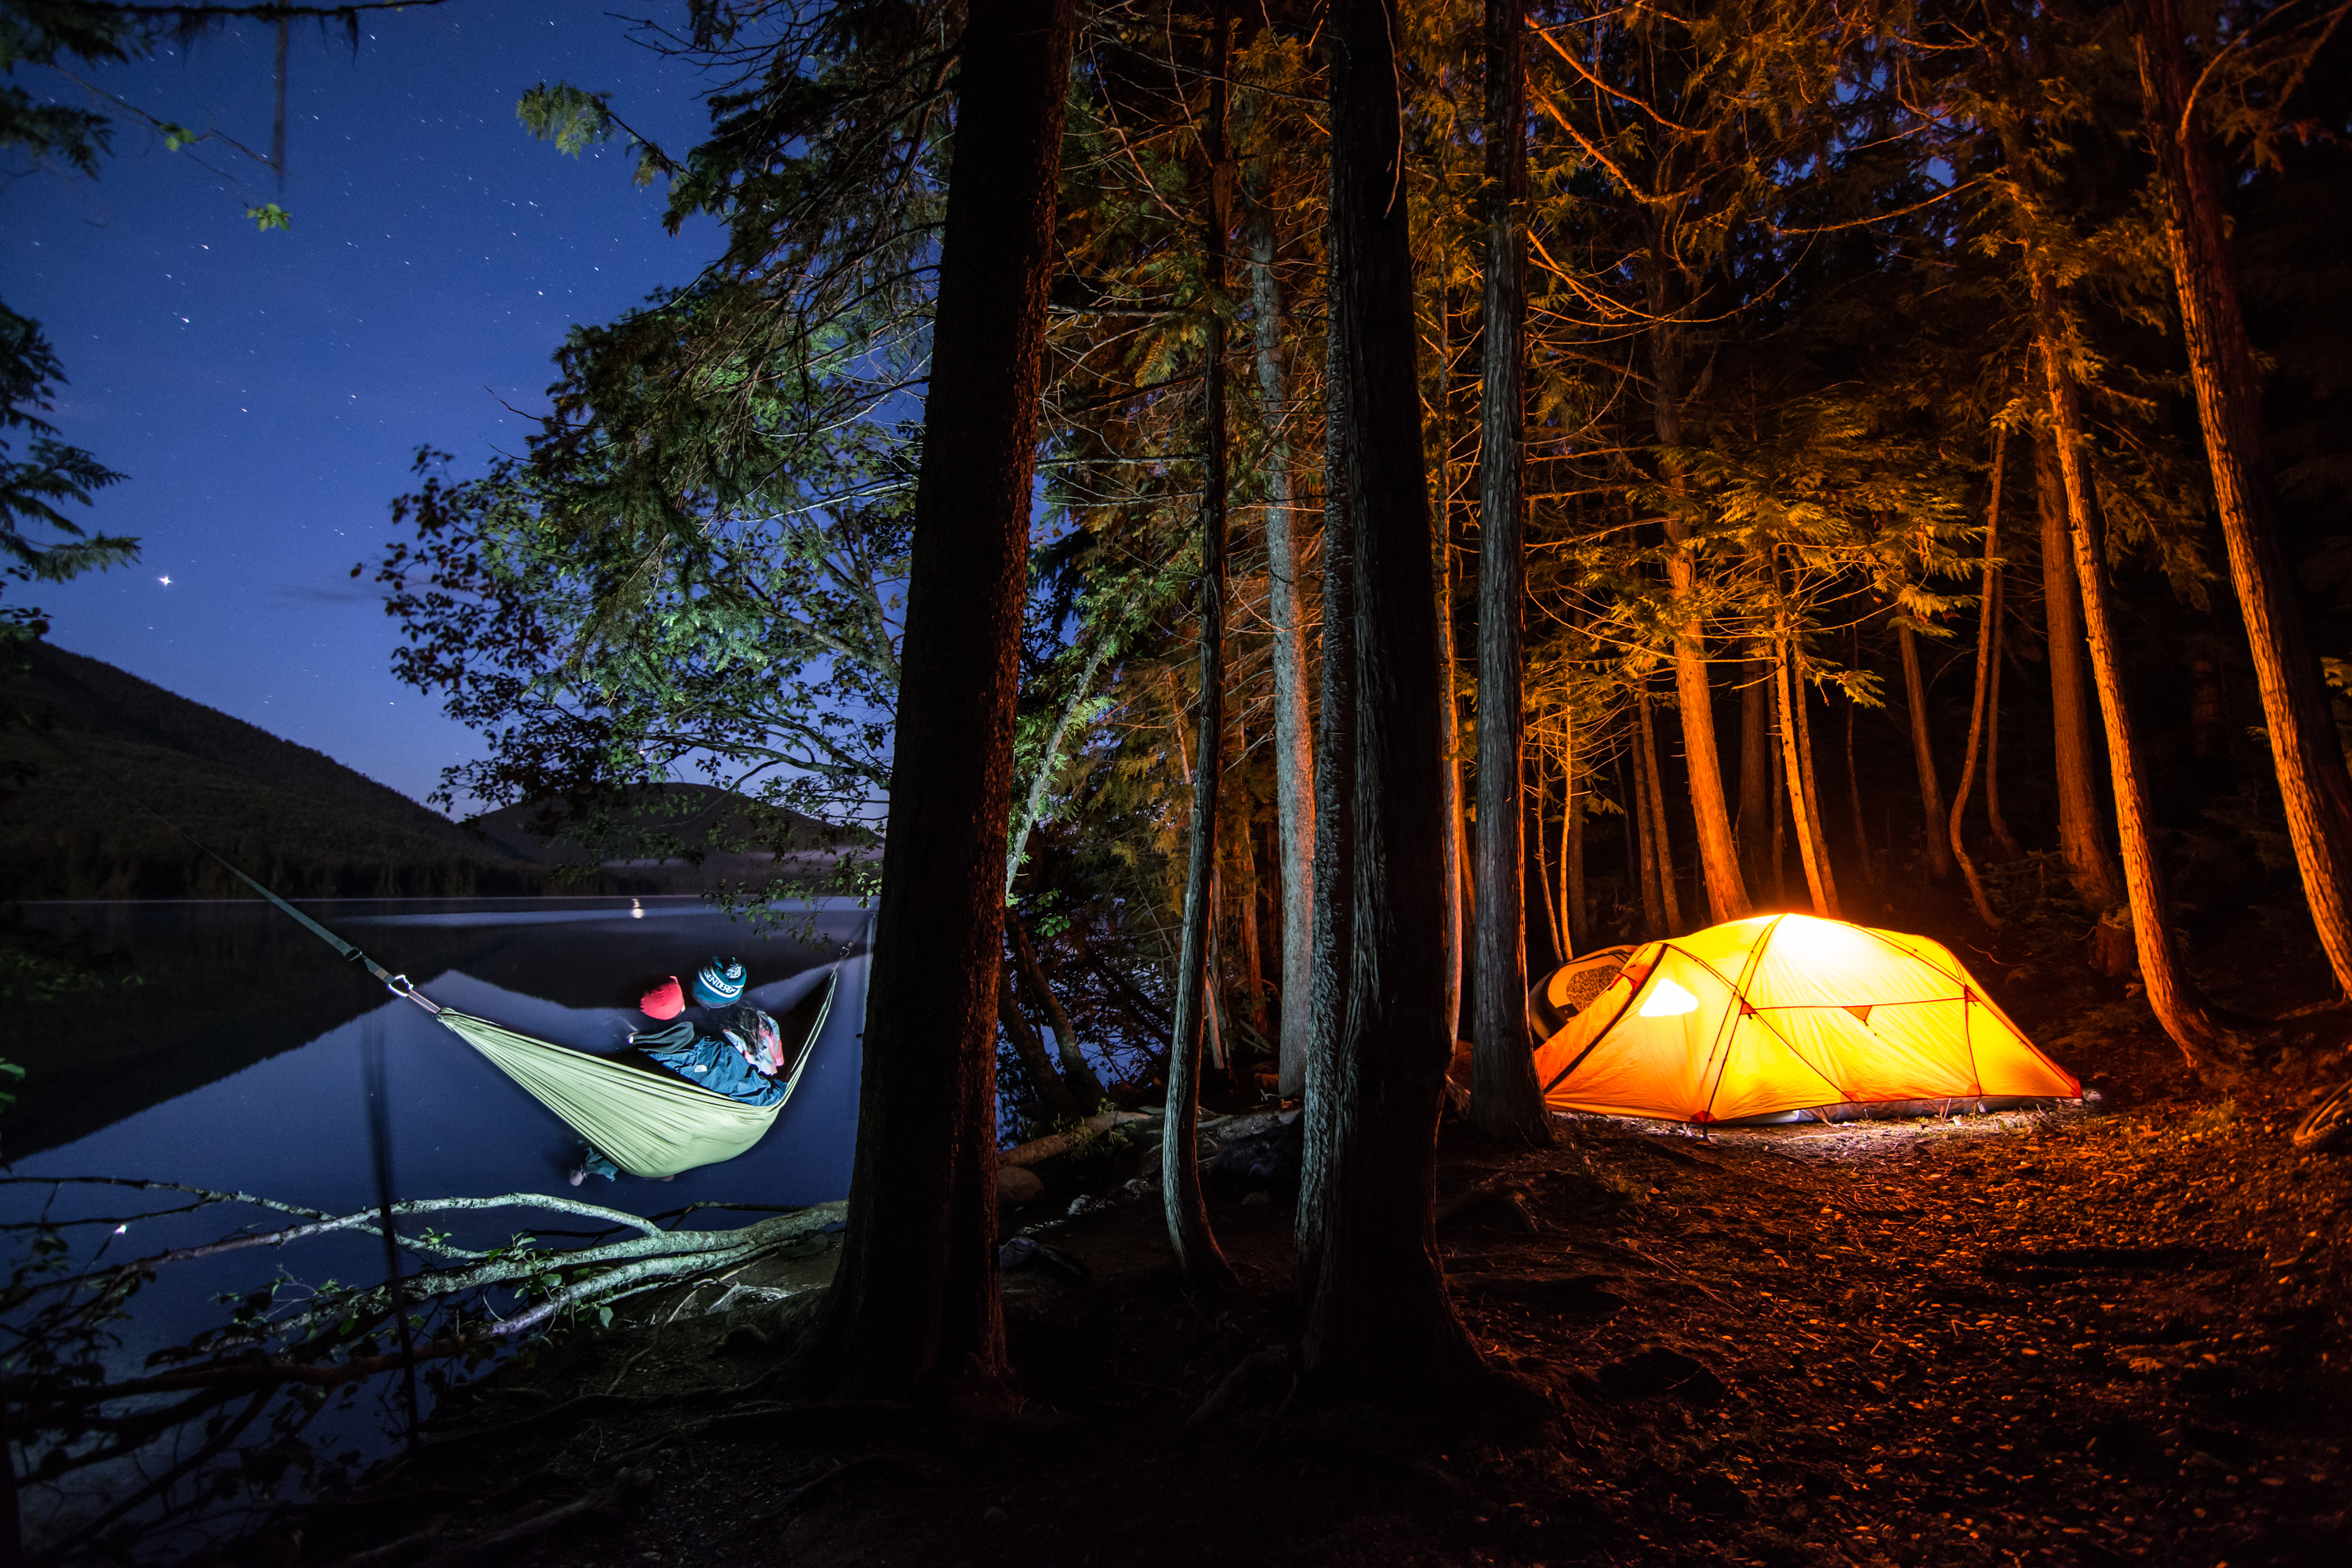 Photo camp. Палатка в лесу. Палатка у речки. Палатка на берегу озера в лесу. Палатка у озера.